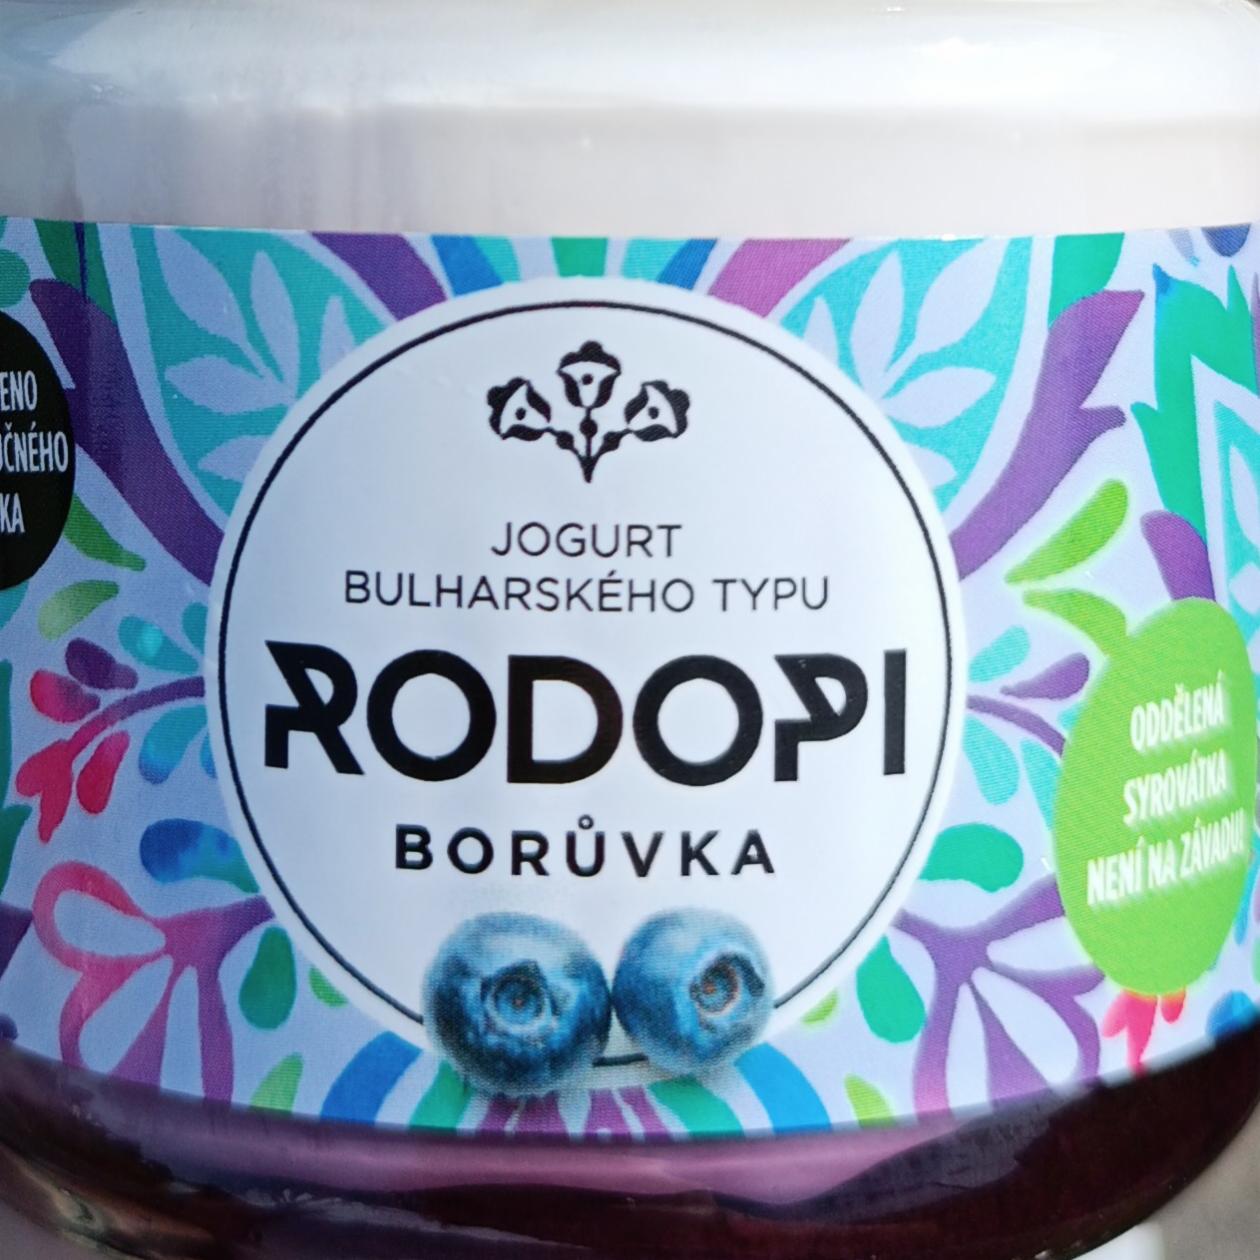 Fotografie - Jogurt bulharského typu borůvka Rodopi